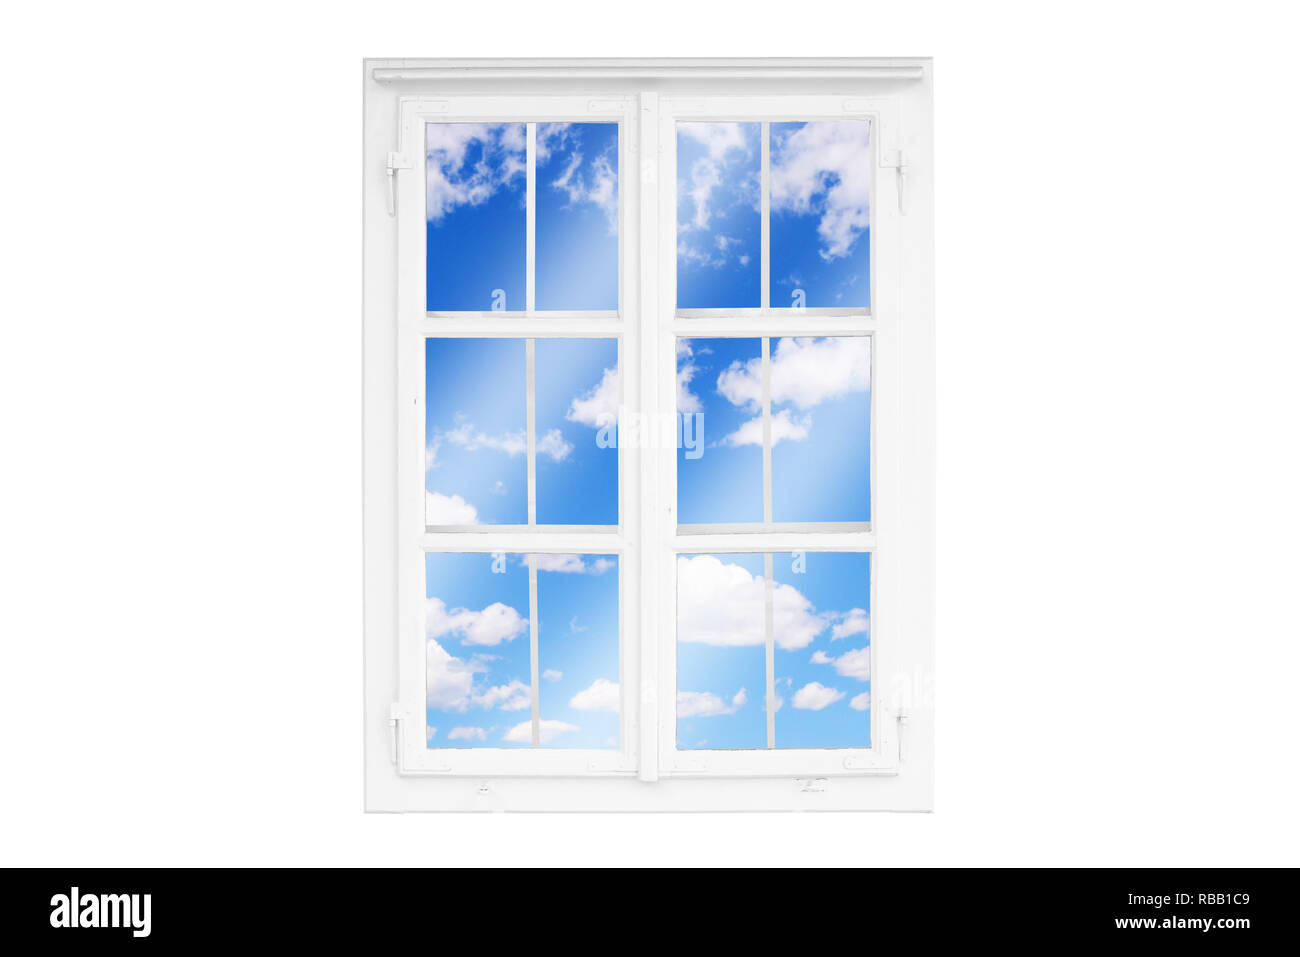 Blick durch das Fenster zu weißen Wolken, Himmel. Konzept der Entspannung, gute Laune. Isolierte Rahmen. Stockfoto